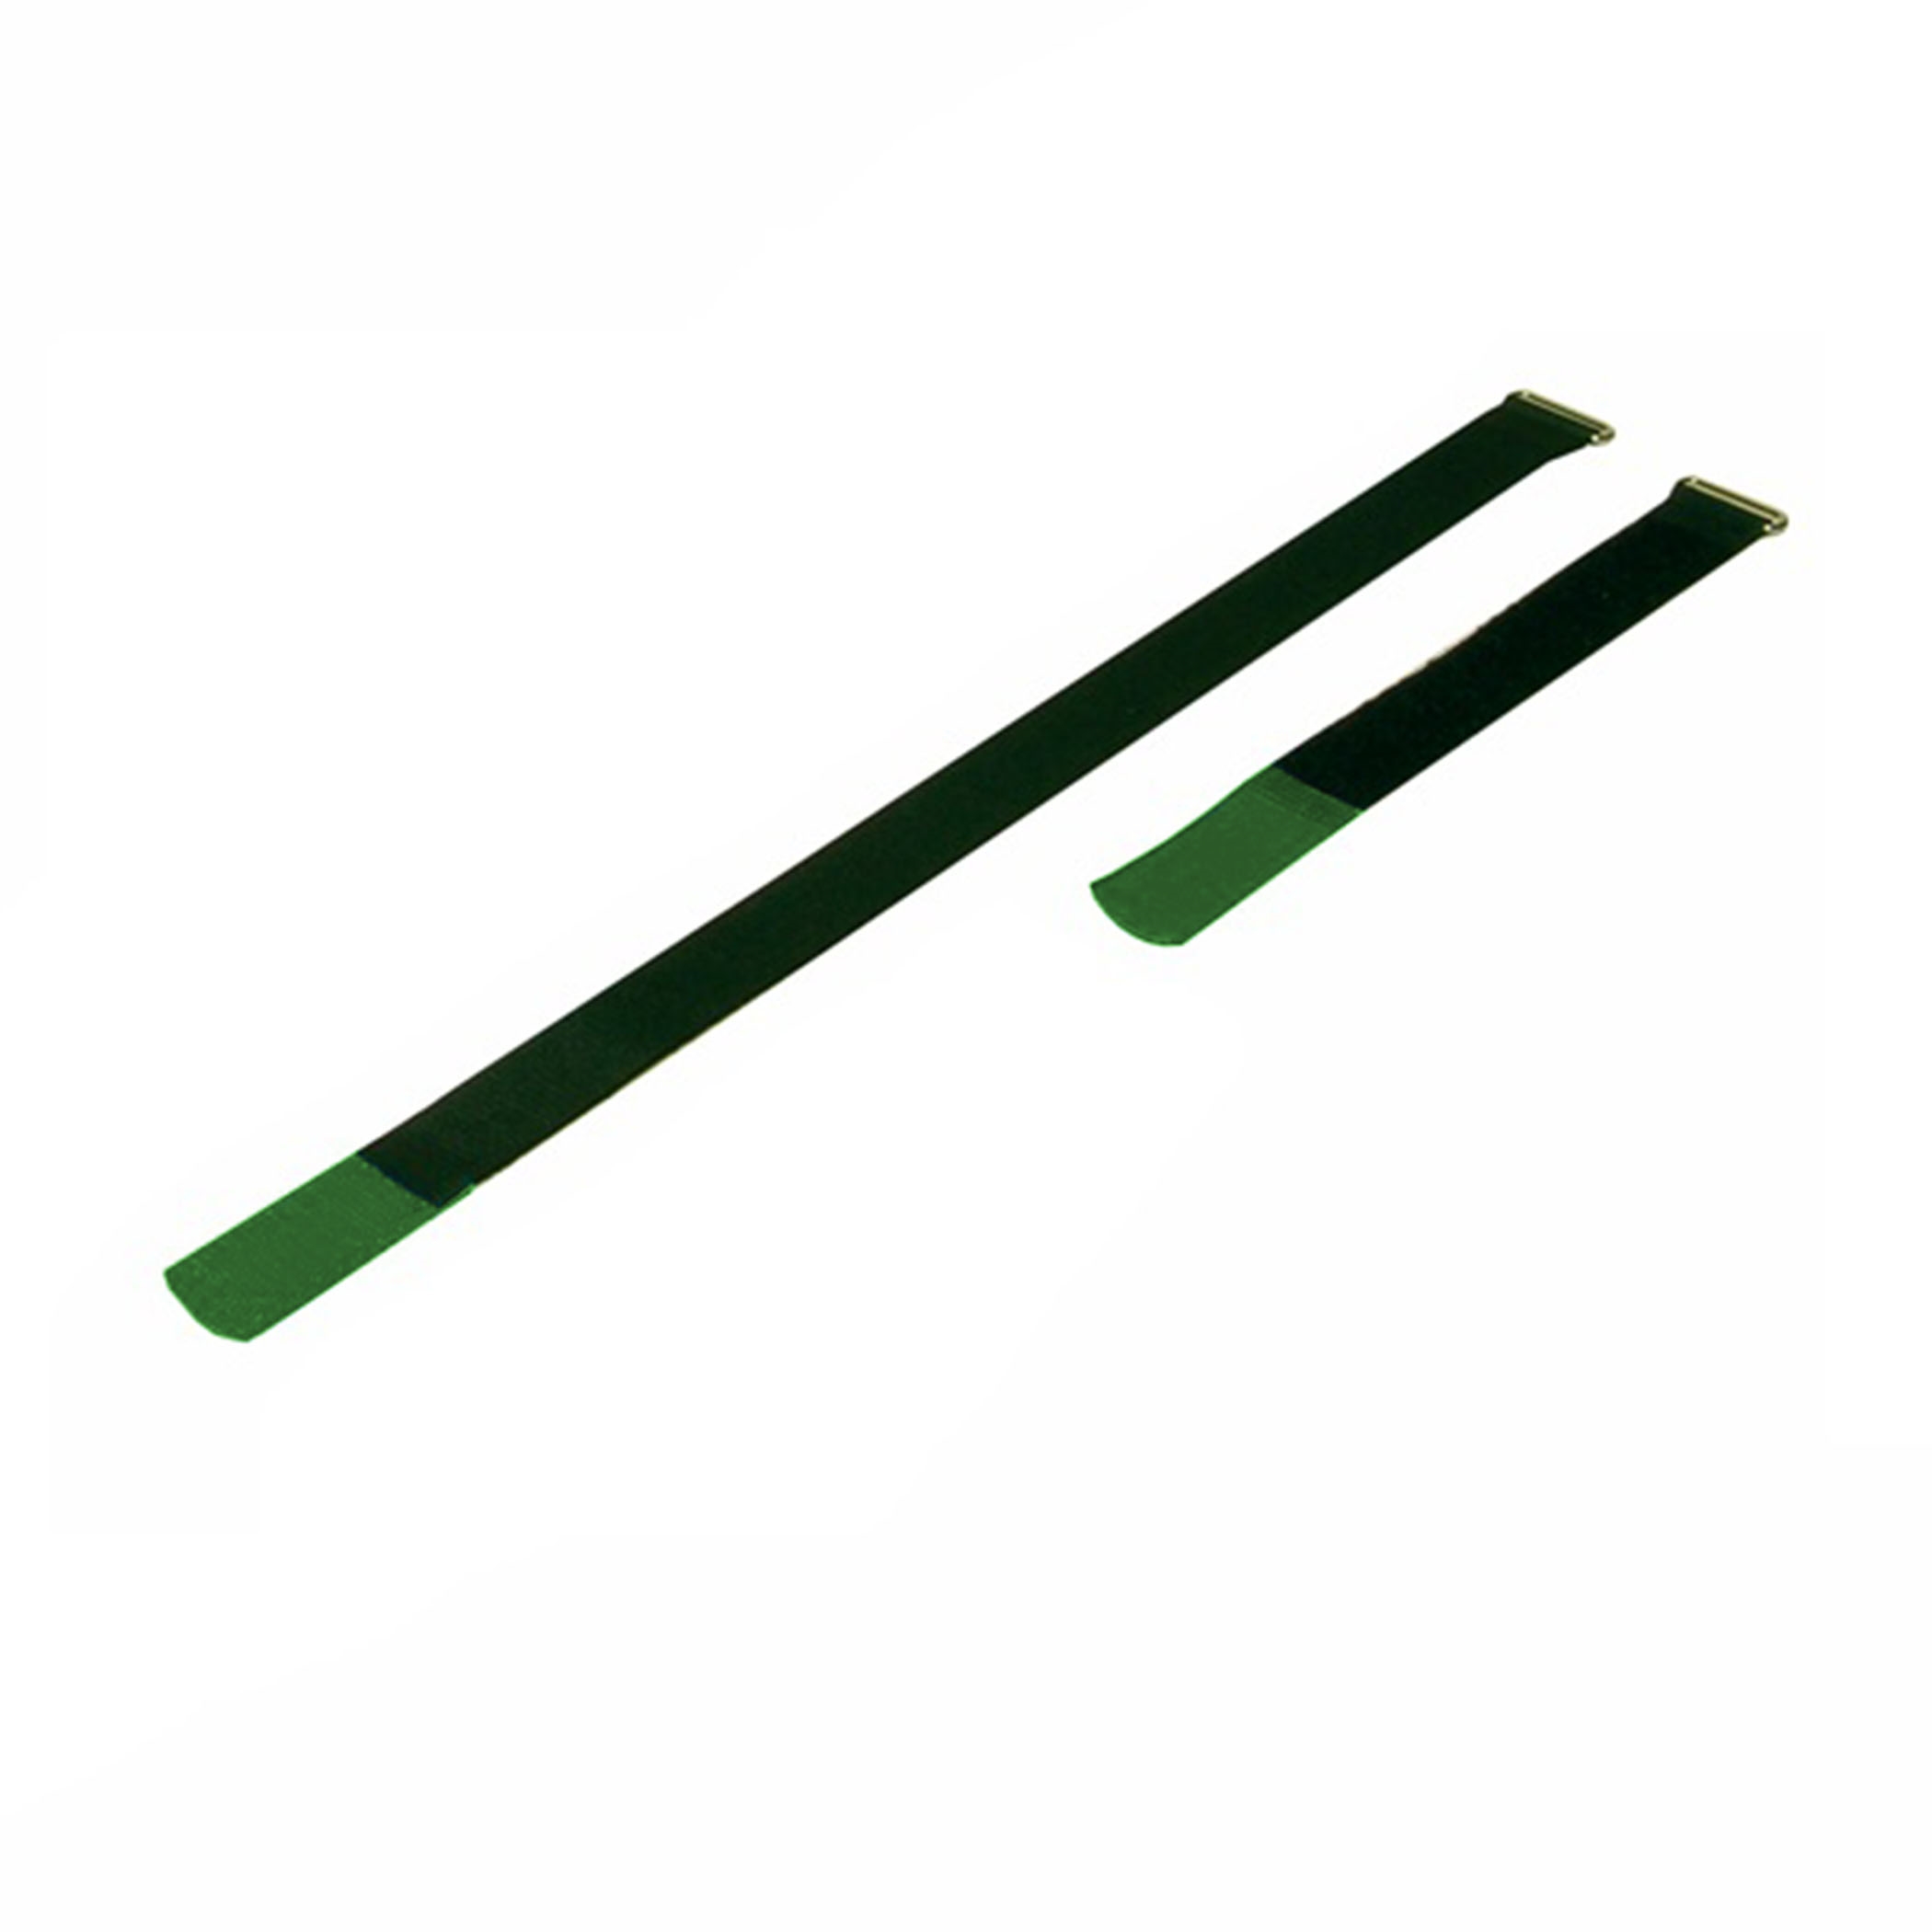 Kabelbinder 410x25mm met haaktip groen, (10 stuks) - a2541-820h